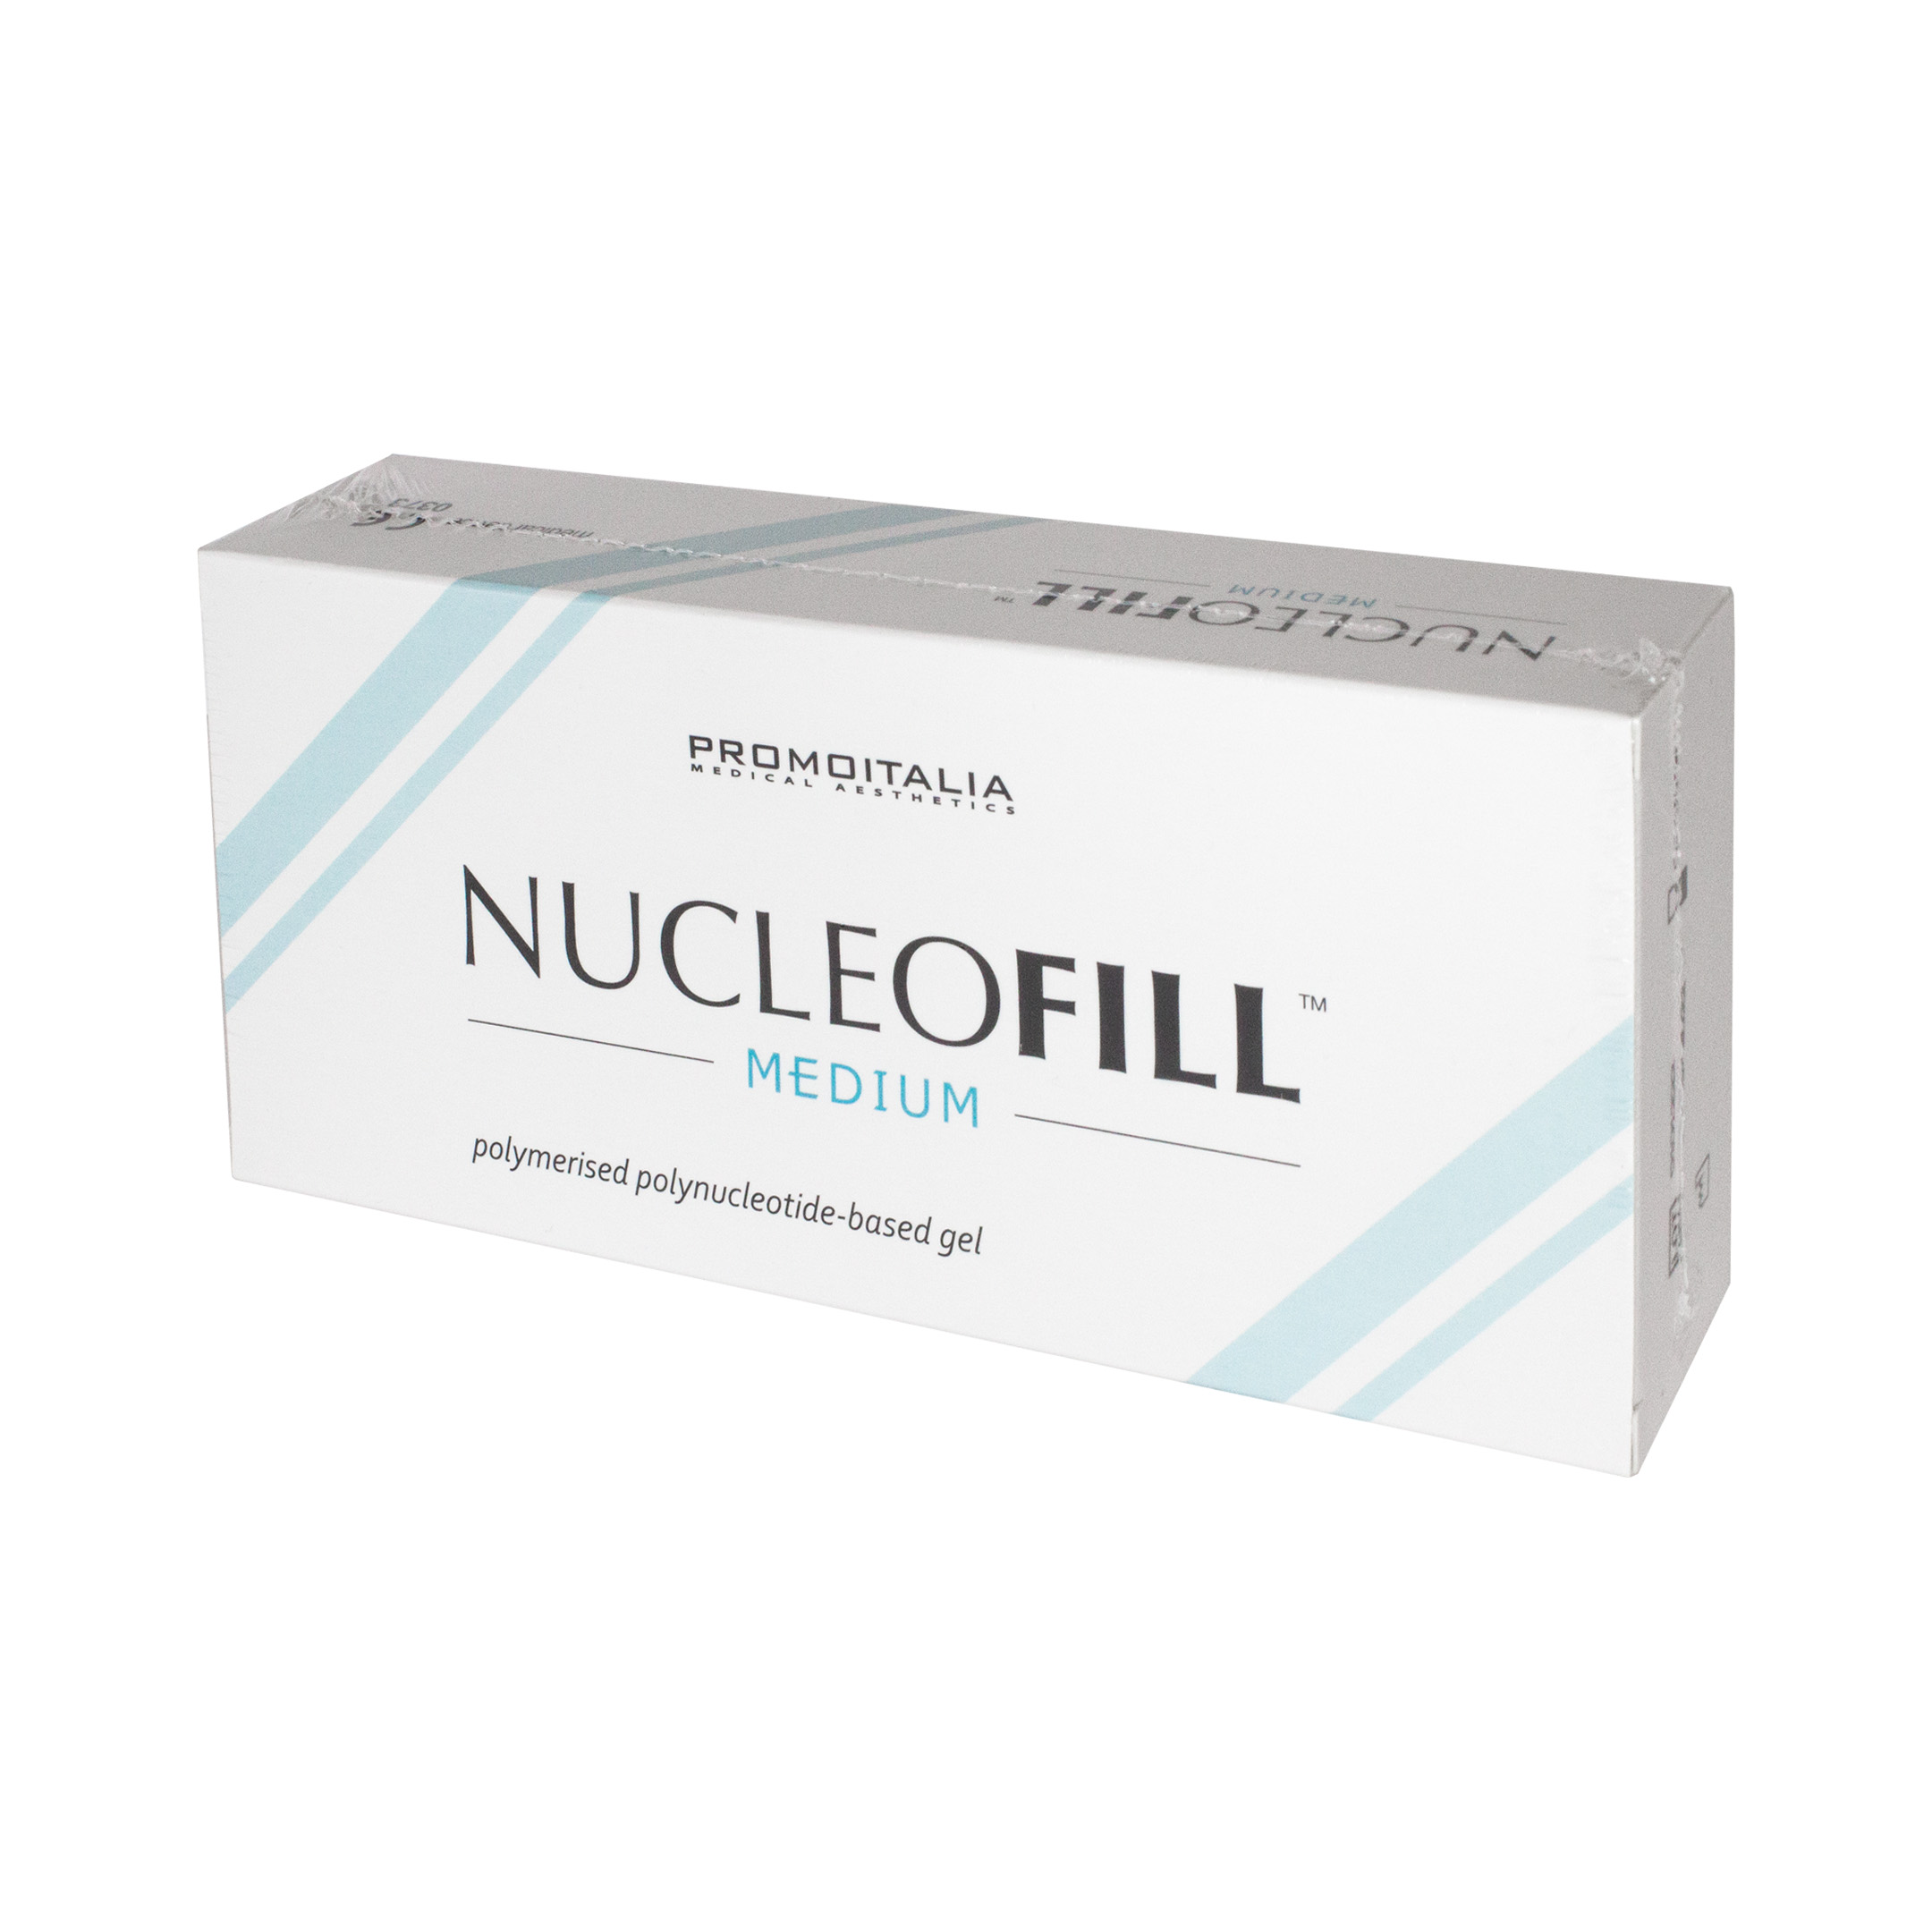 Nucleofill medium side